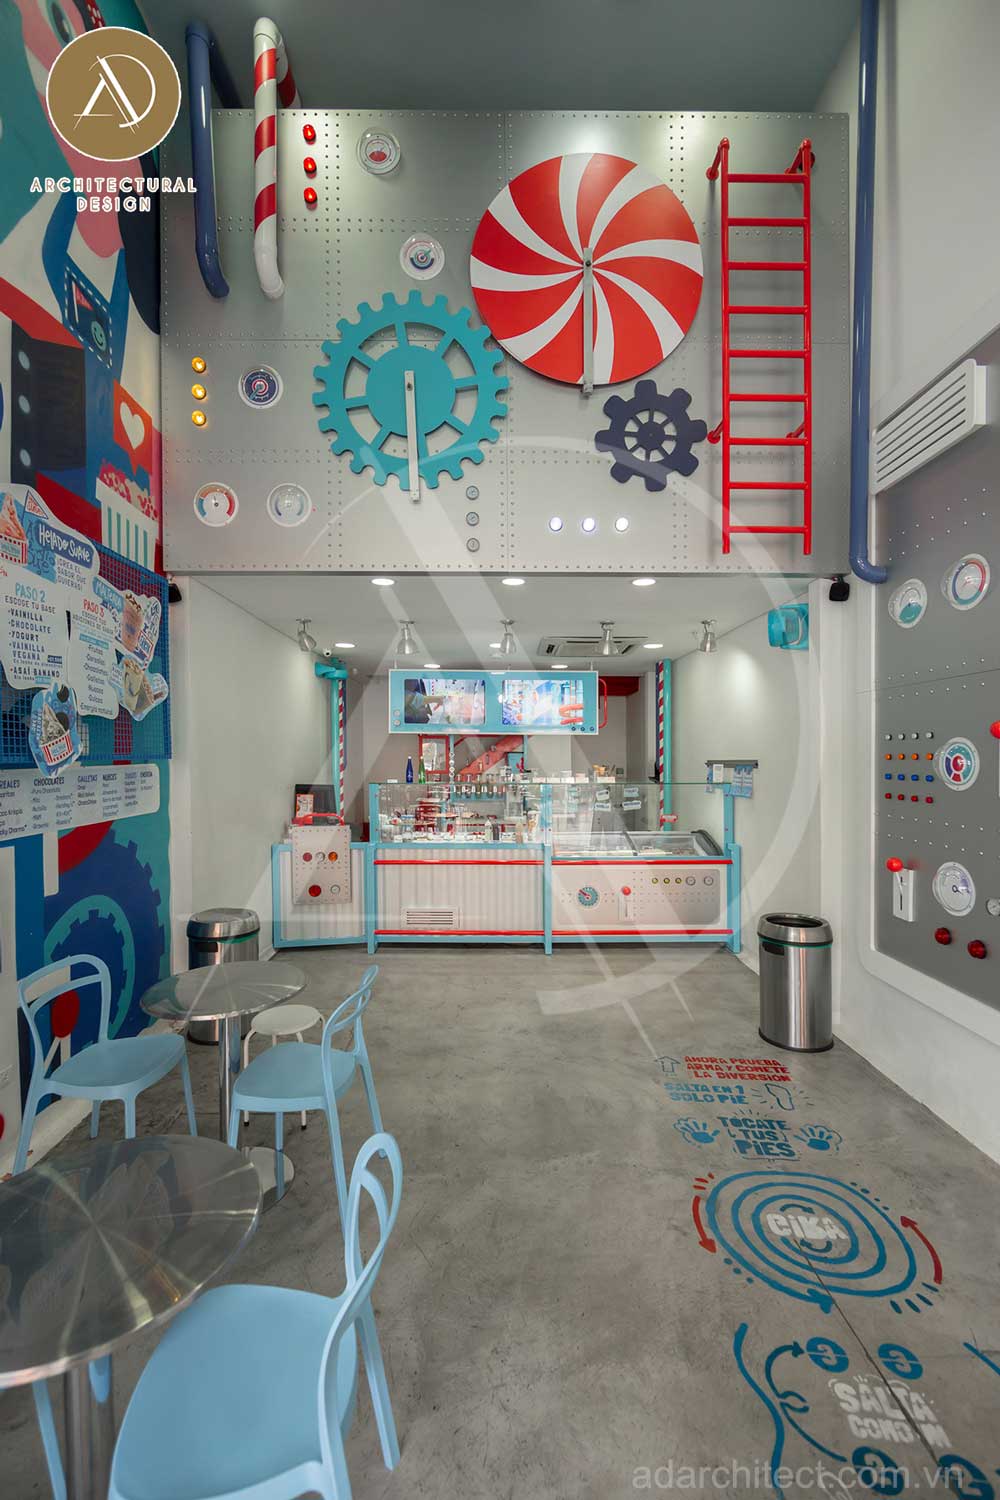 thiết kế quán kem tự chọn: trang trí tiệm kem phong cách dễ thương, thu hút nhiều khách hàng trẻ